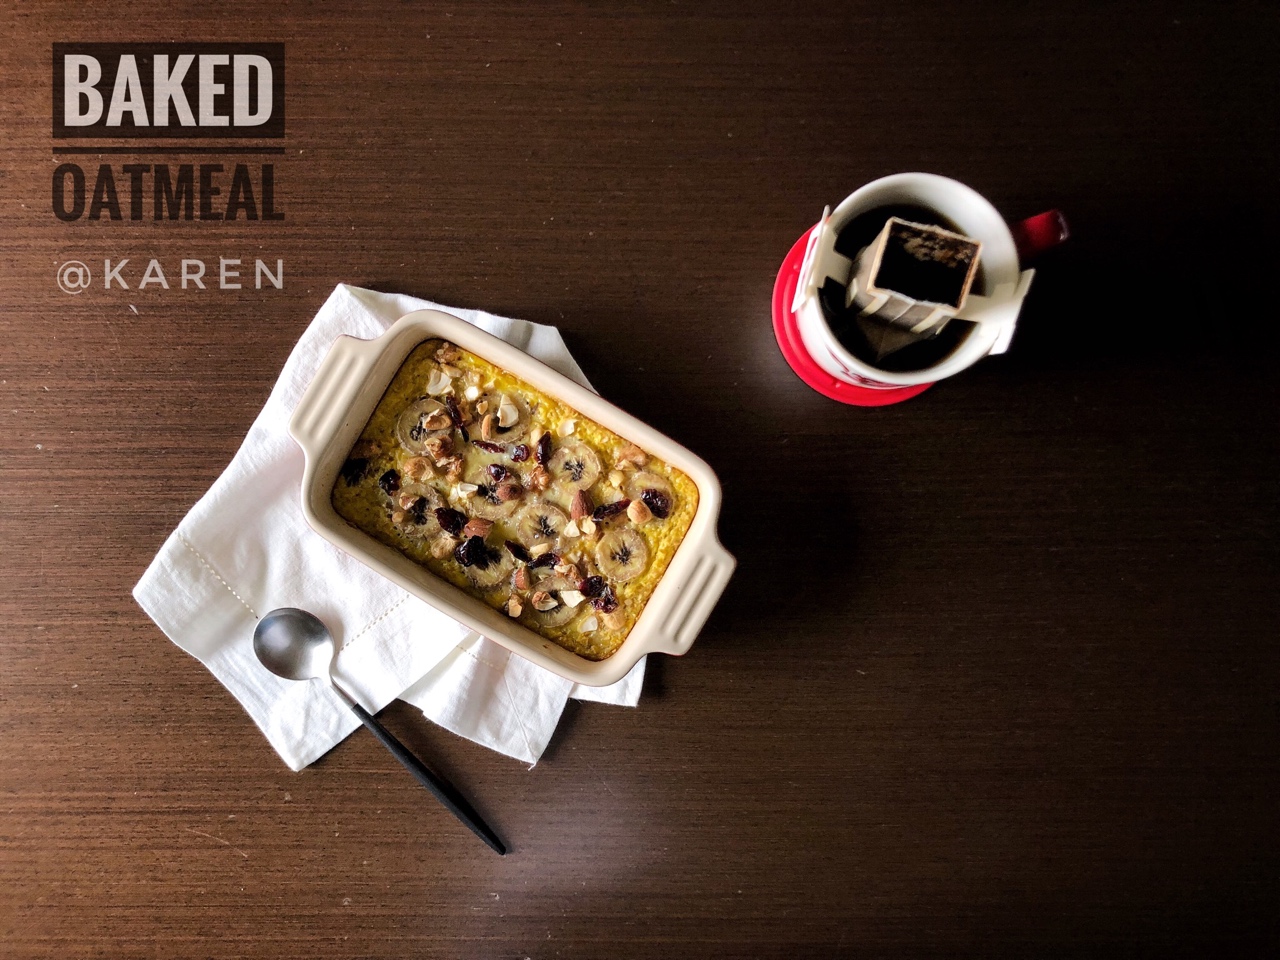 Baked Oatmeal Breakfast 早餐烤燕麦